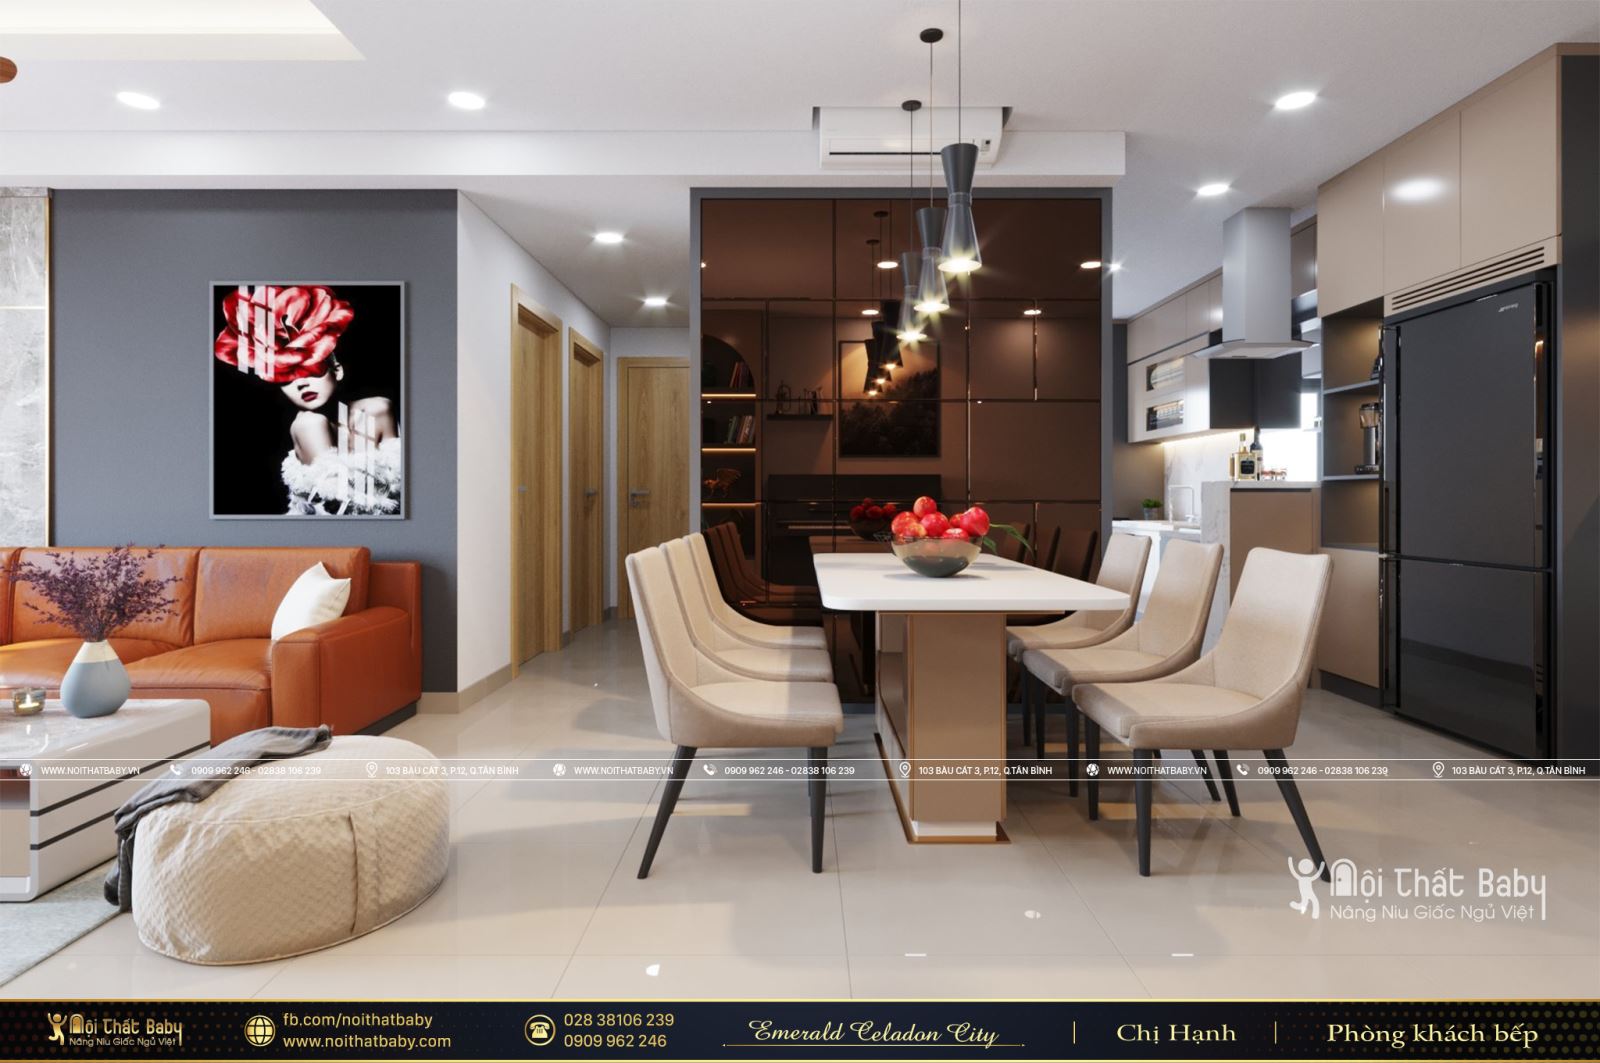 Thiết kế và thi công nội thất chung cư hiện đại căn hộ Emerald Celadon City 112m2